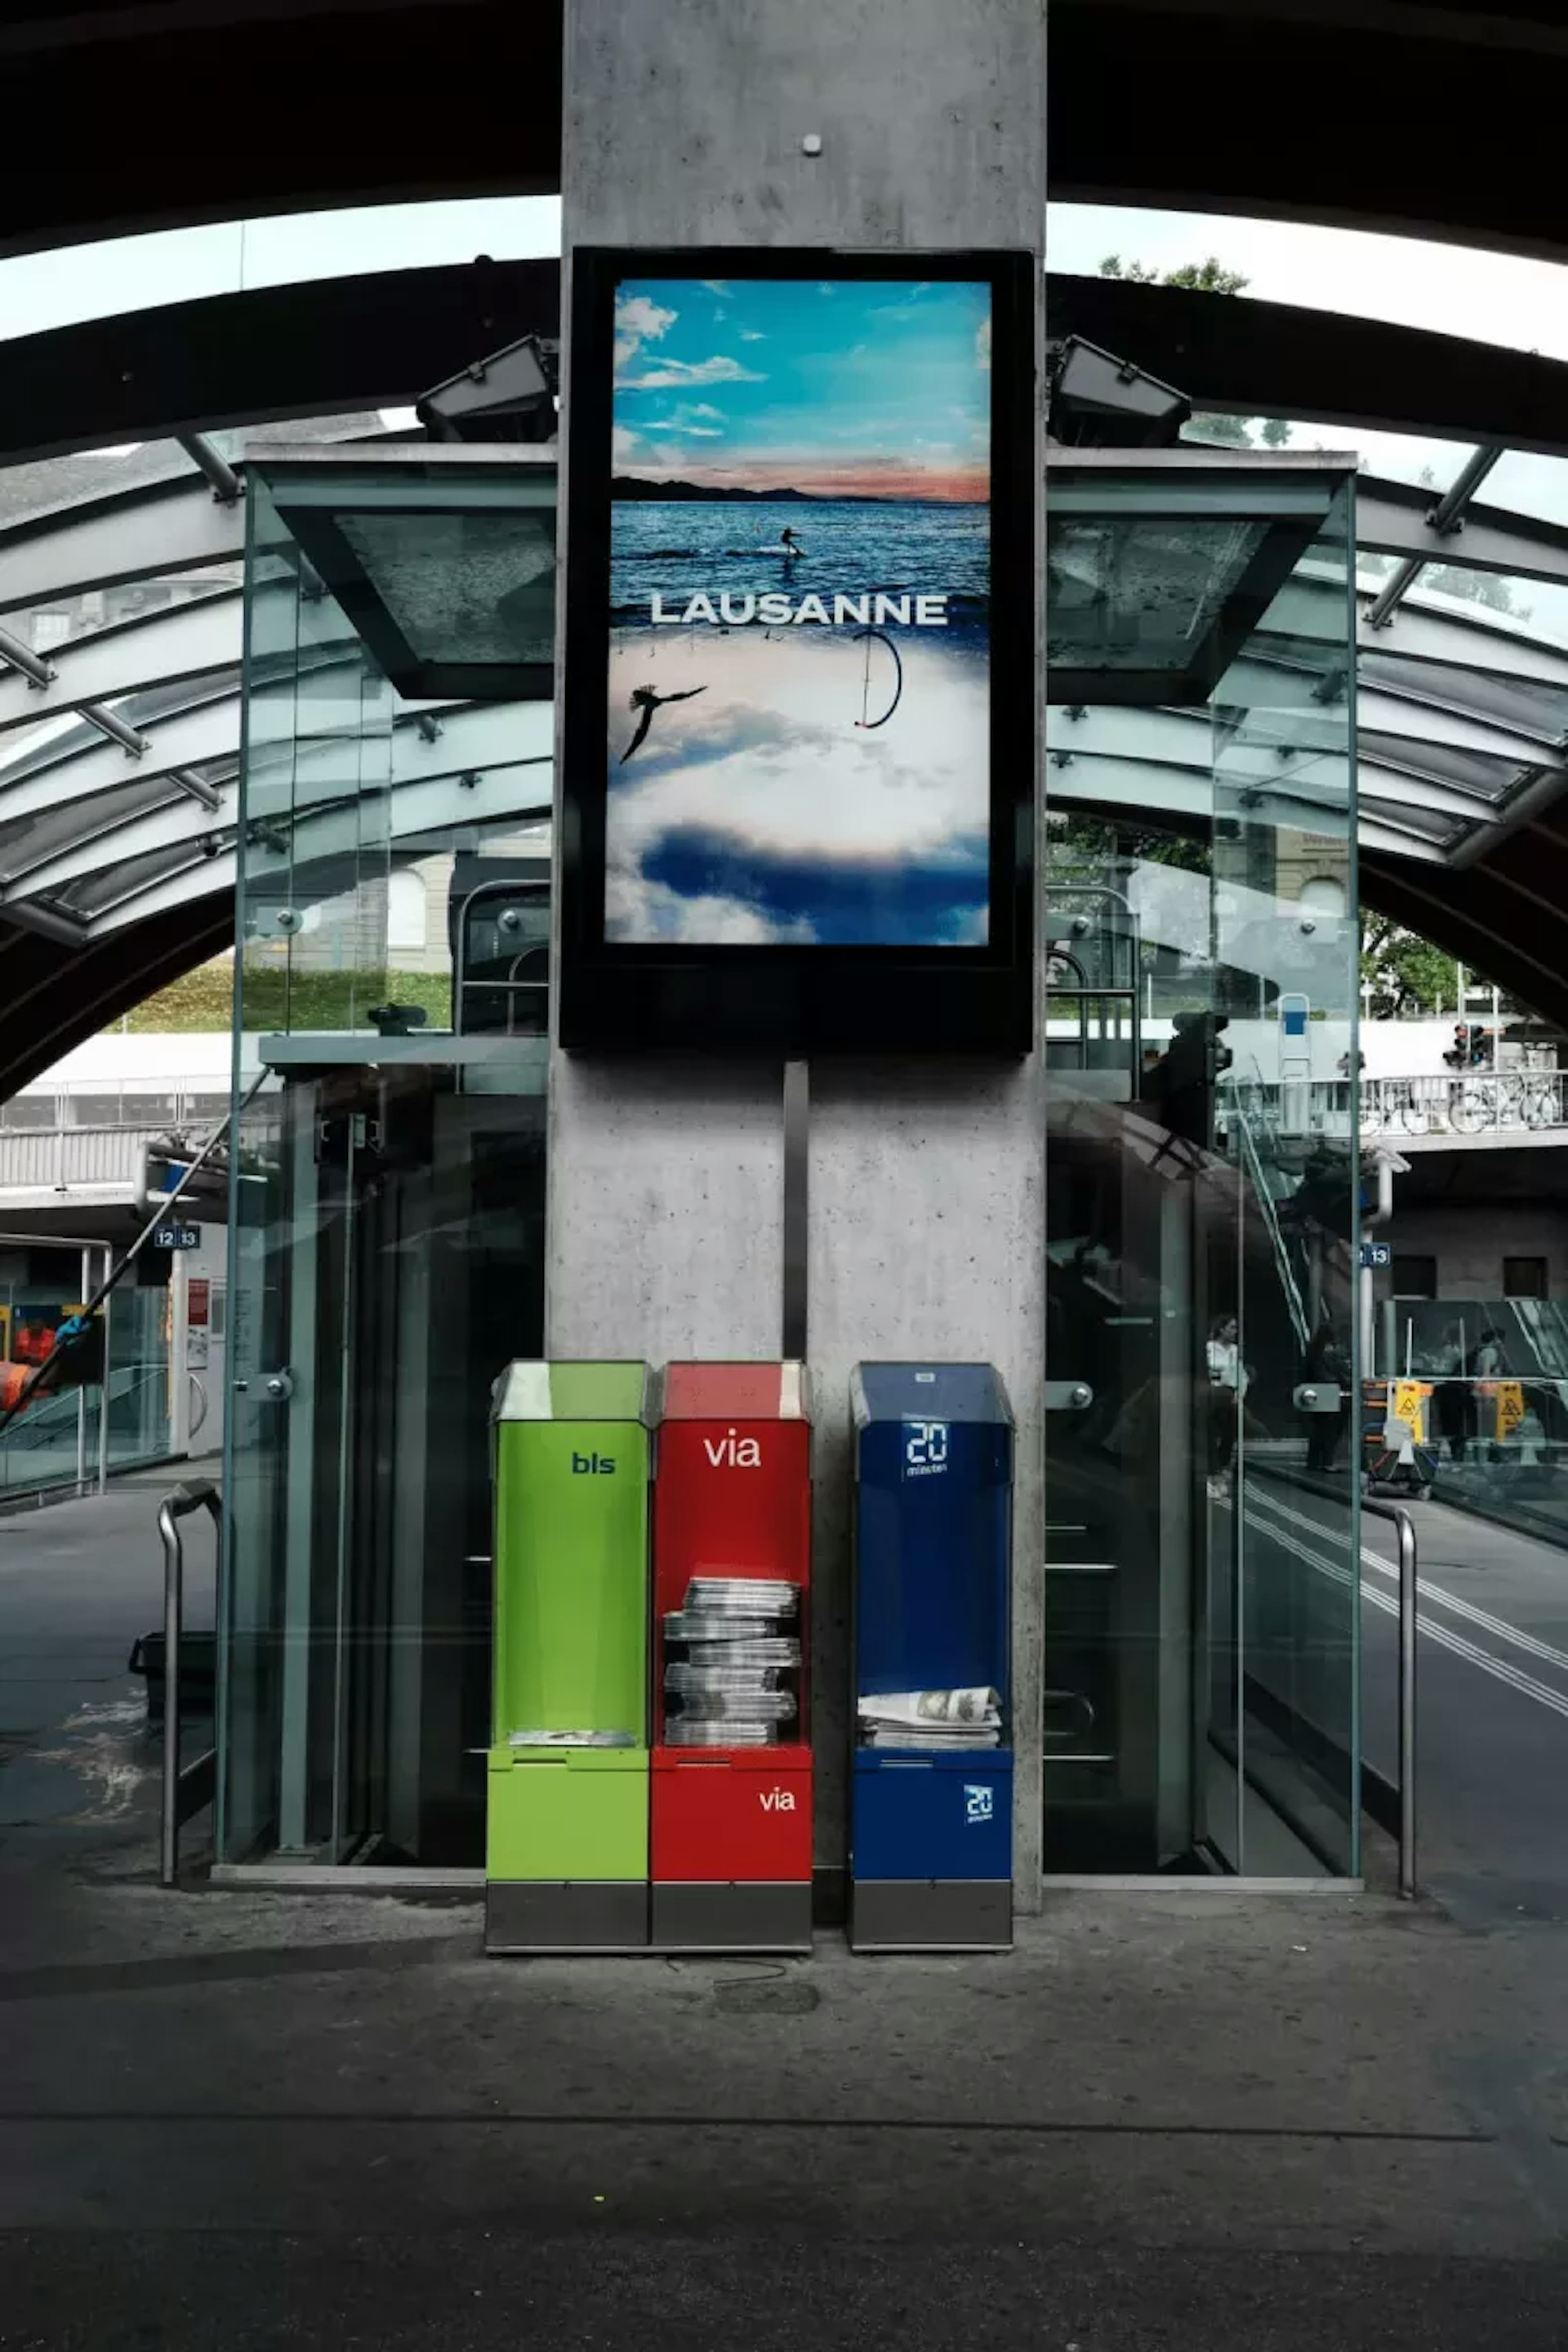 Affiche touristique pour Lausanne dans une gare